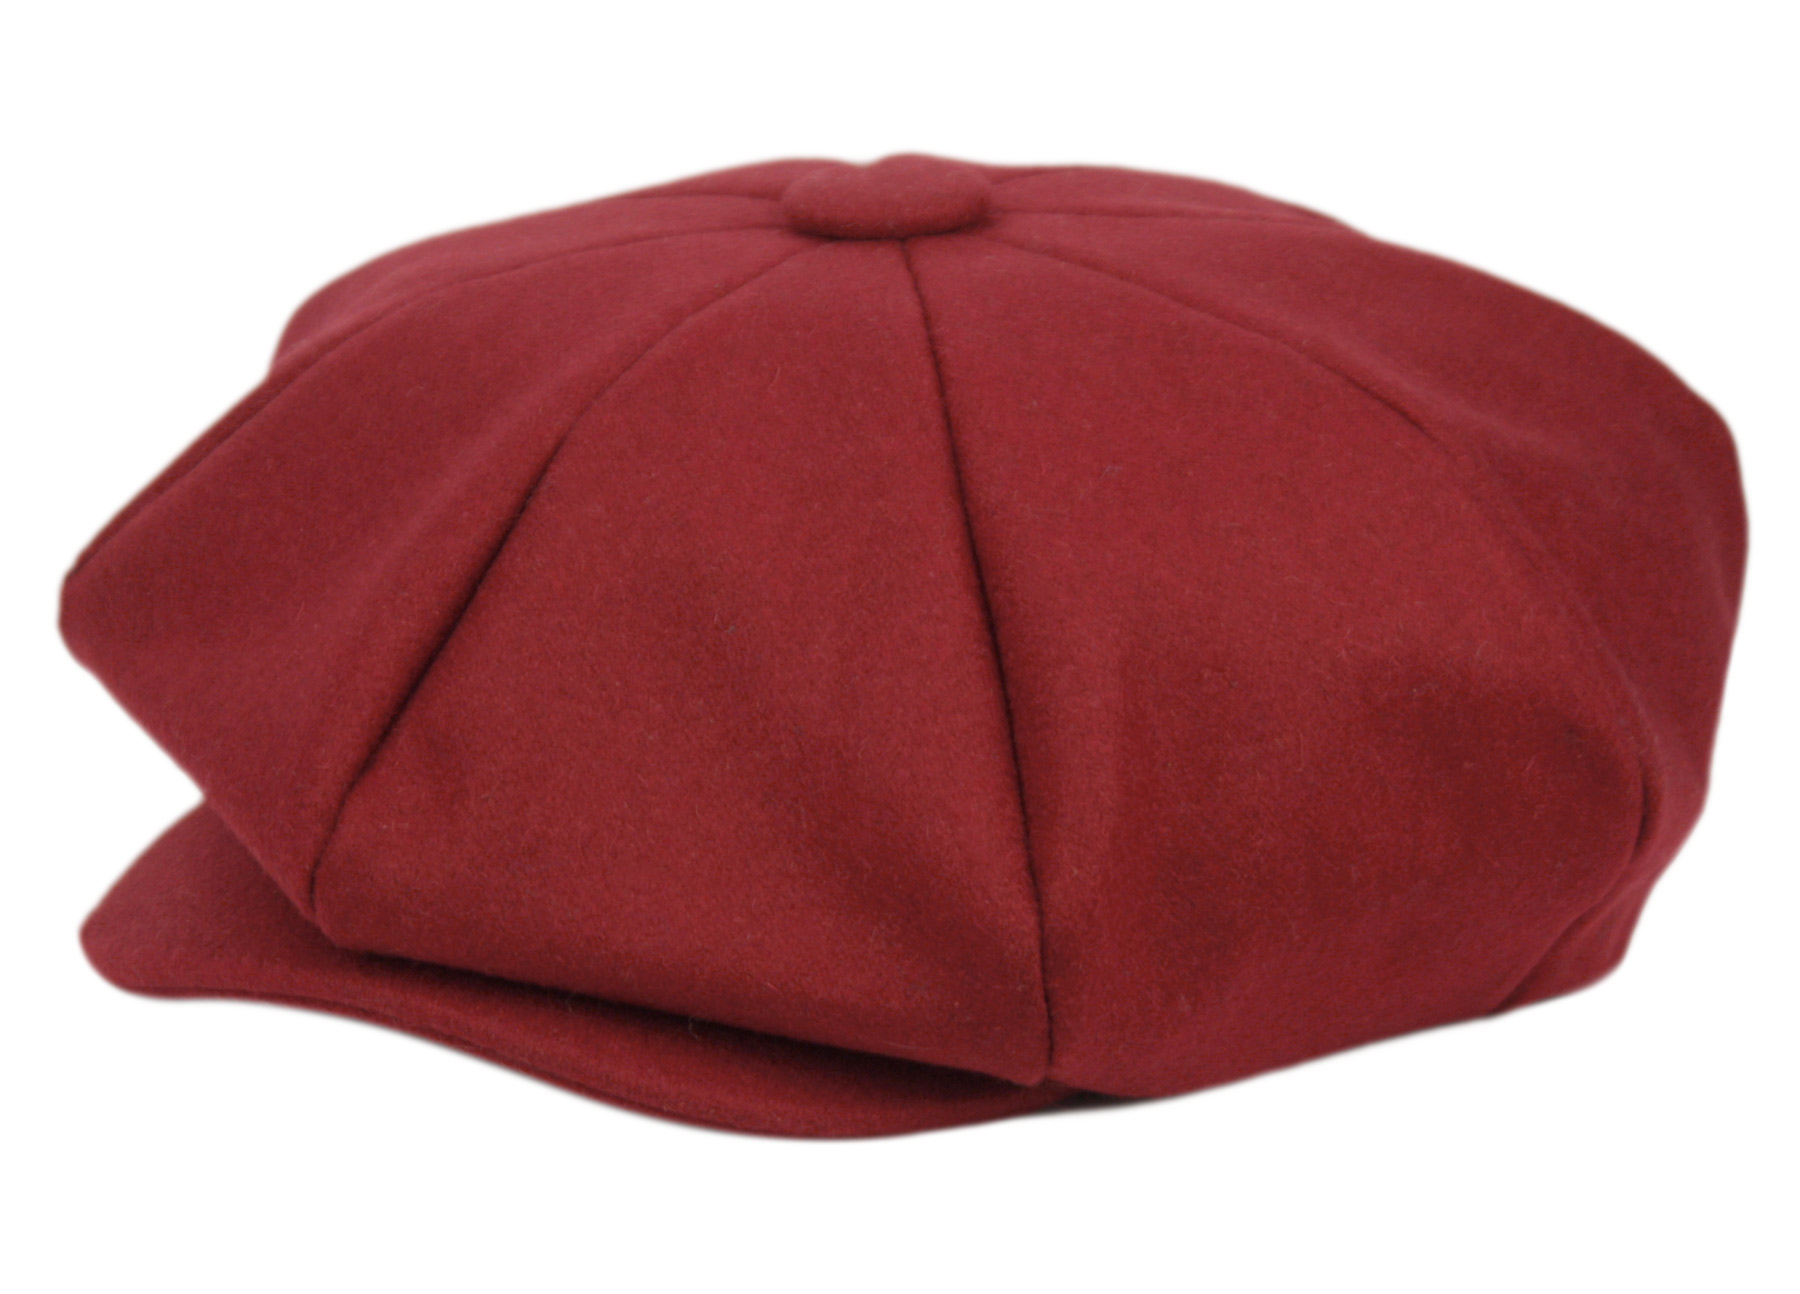 SOLID COLOR WOOL BIG APPLEJACK NEWSBOY CAP BA1778 - Epoch Fashion Accessory